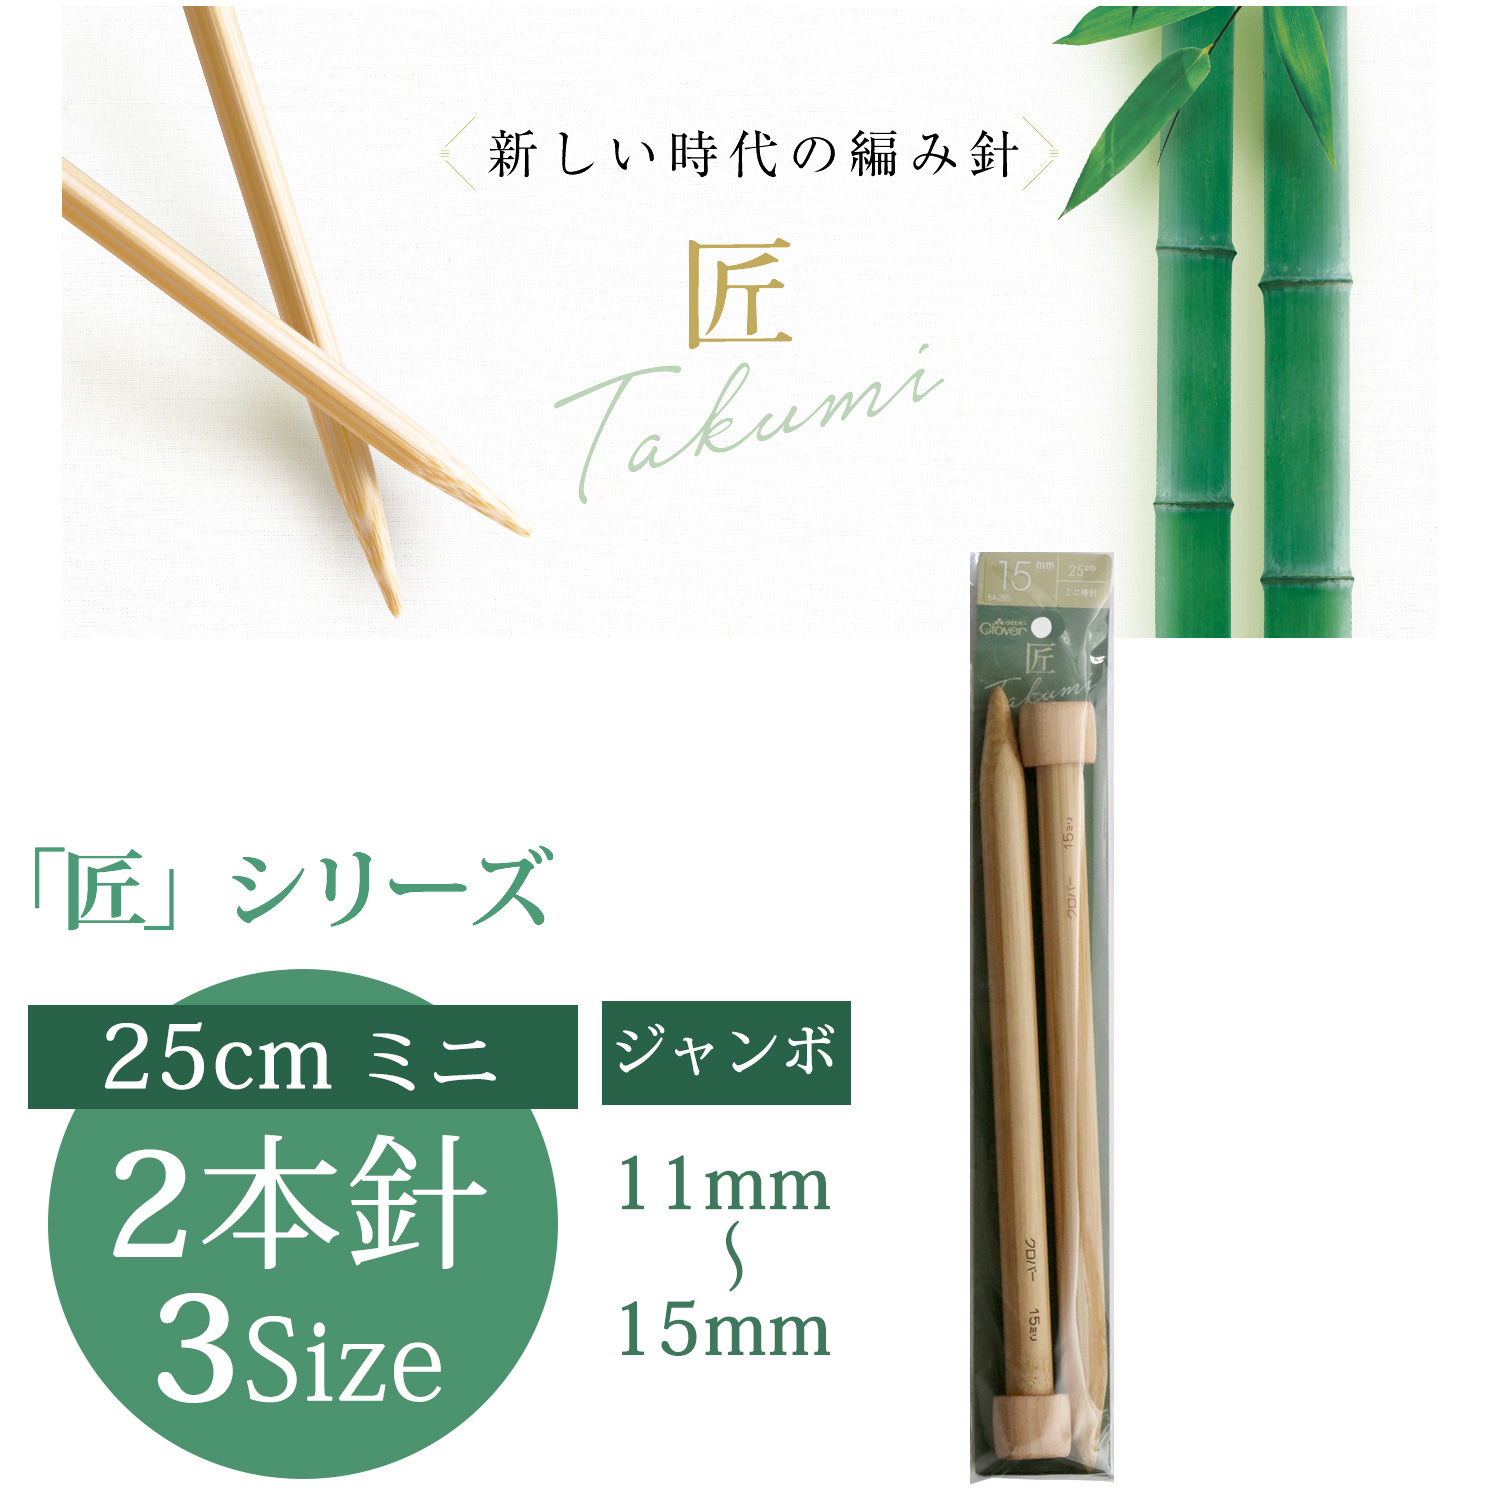 CL54-282  Clover Takumi MiniJumbo Knitting Needle 25cm 2pcs (pcs)